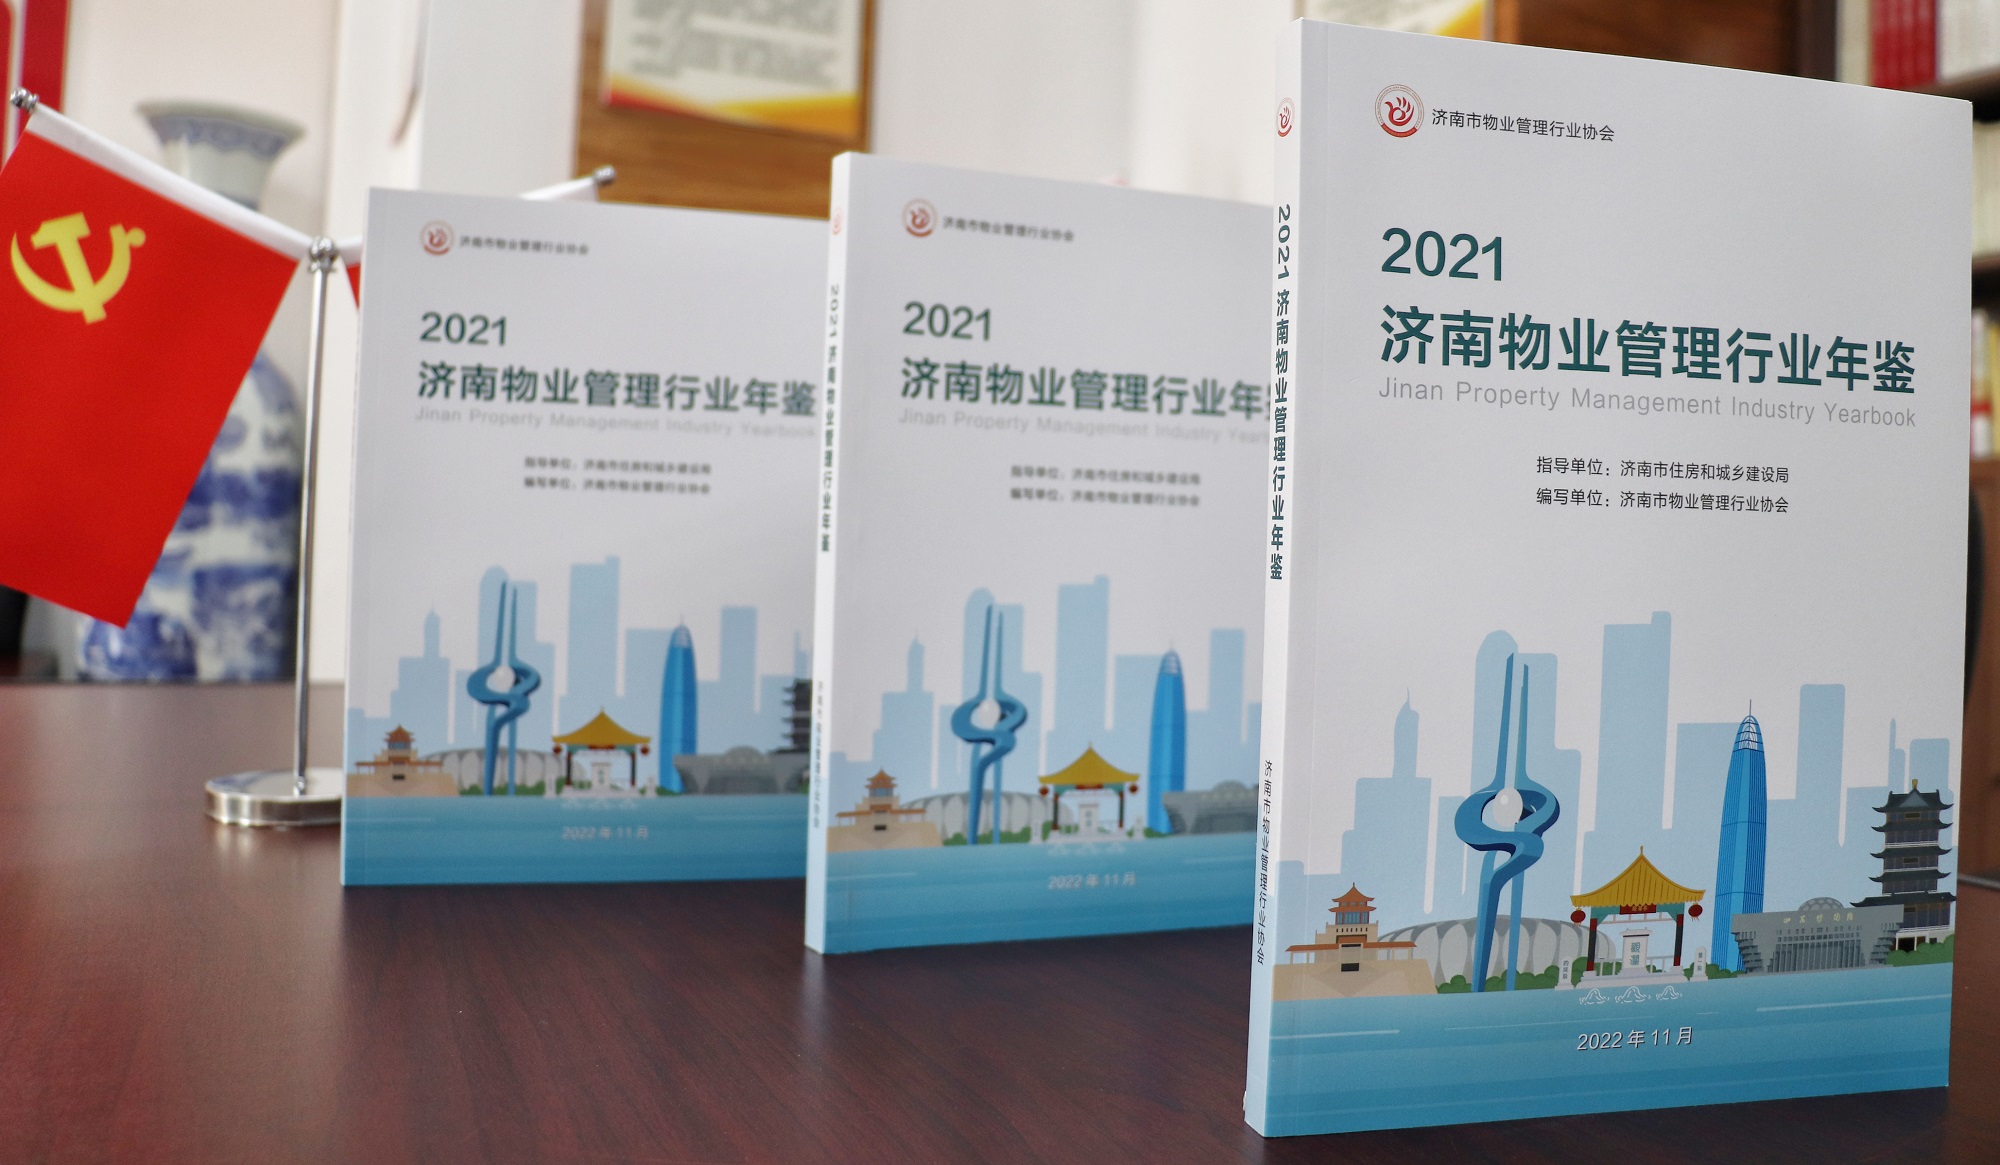 《2021济南物业管理行业年鉴》